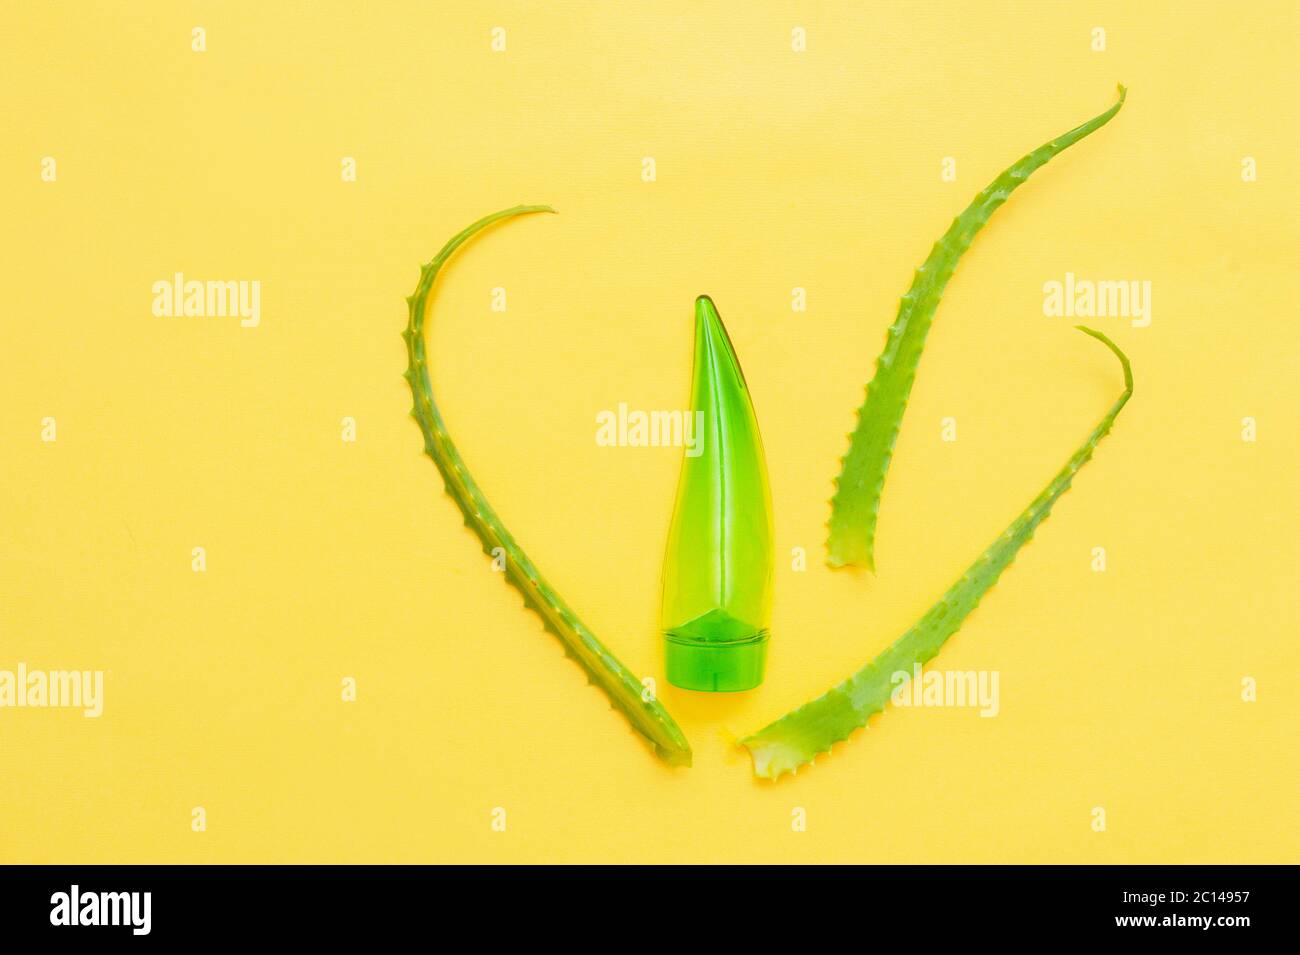 Grüne transparente Kosmetikröhre in Form eines Blattes aus Aloe und echte natürliche Blätter Aloe Vera auf einem gelben sauberen Hintergrund. Kosmetische Layout und Stockfoto